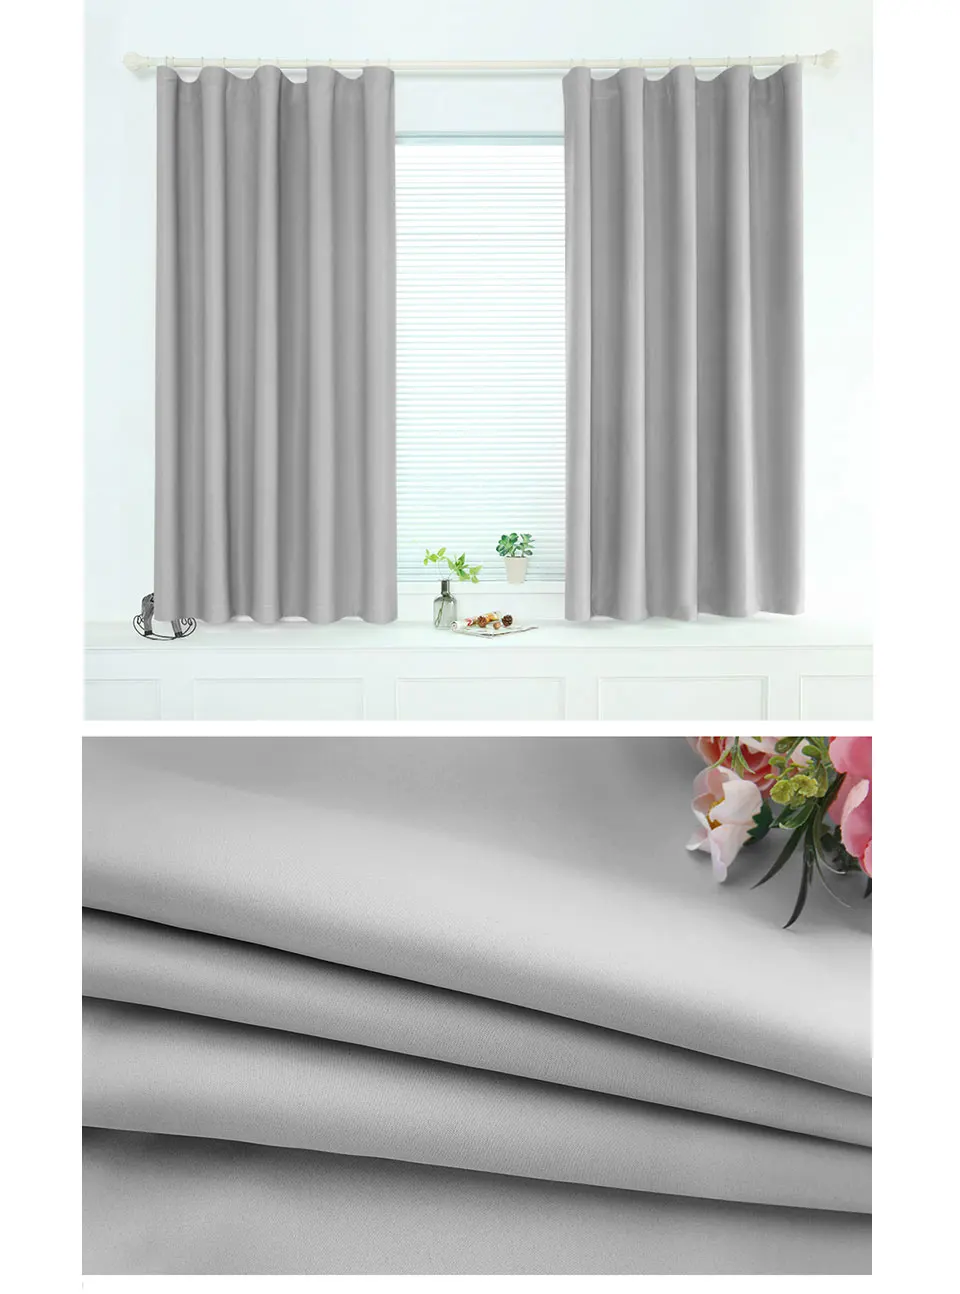 ENHAO Современная Короткая занавеска s для кухонная оконная занавеска для гостиной спальни однотонная ткань шторы оконные обработки домашний декор